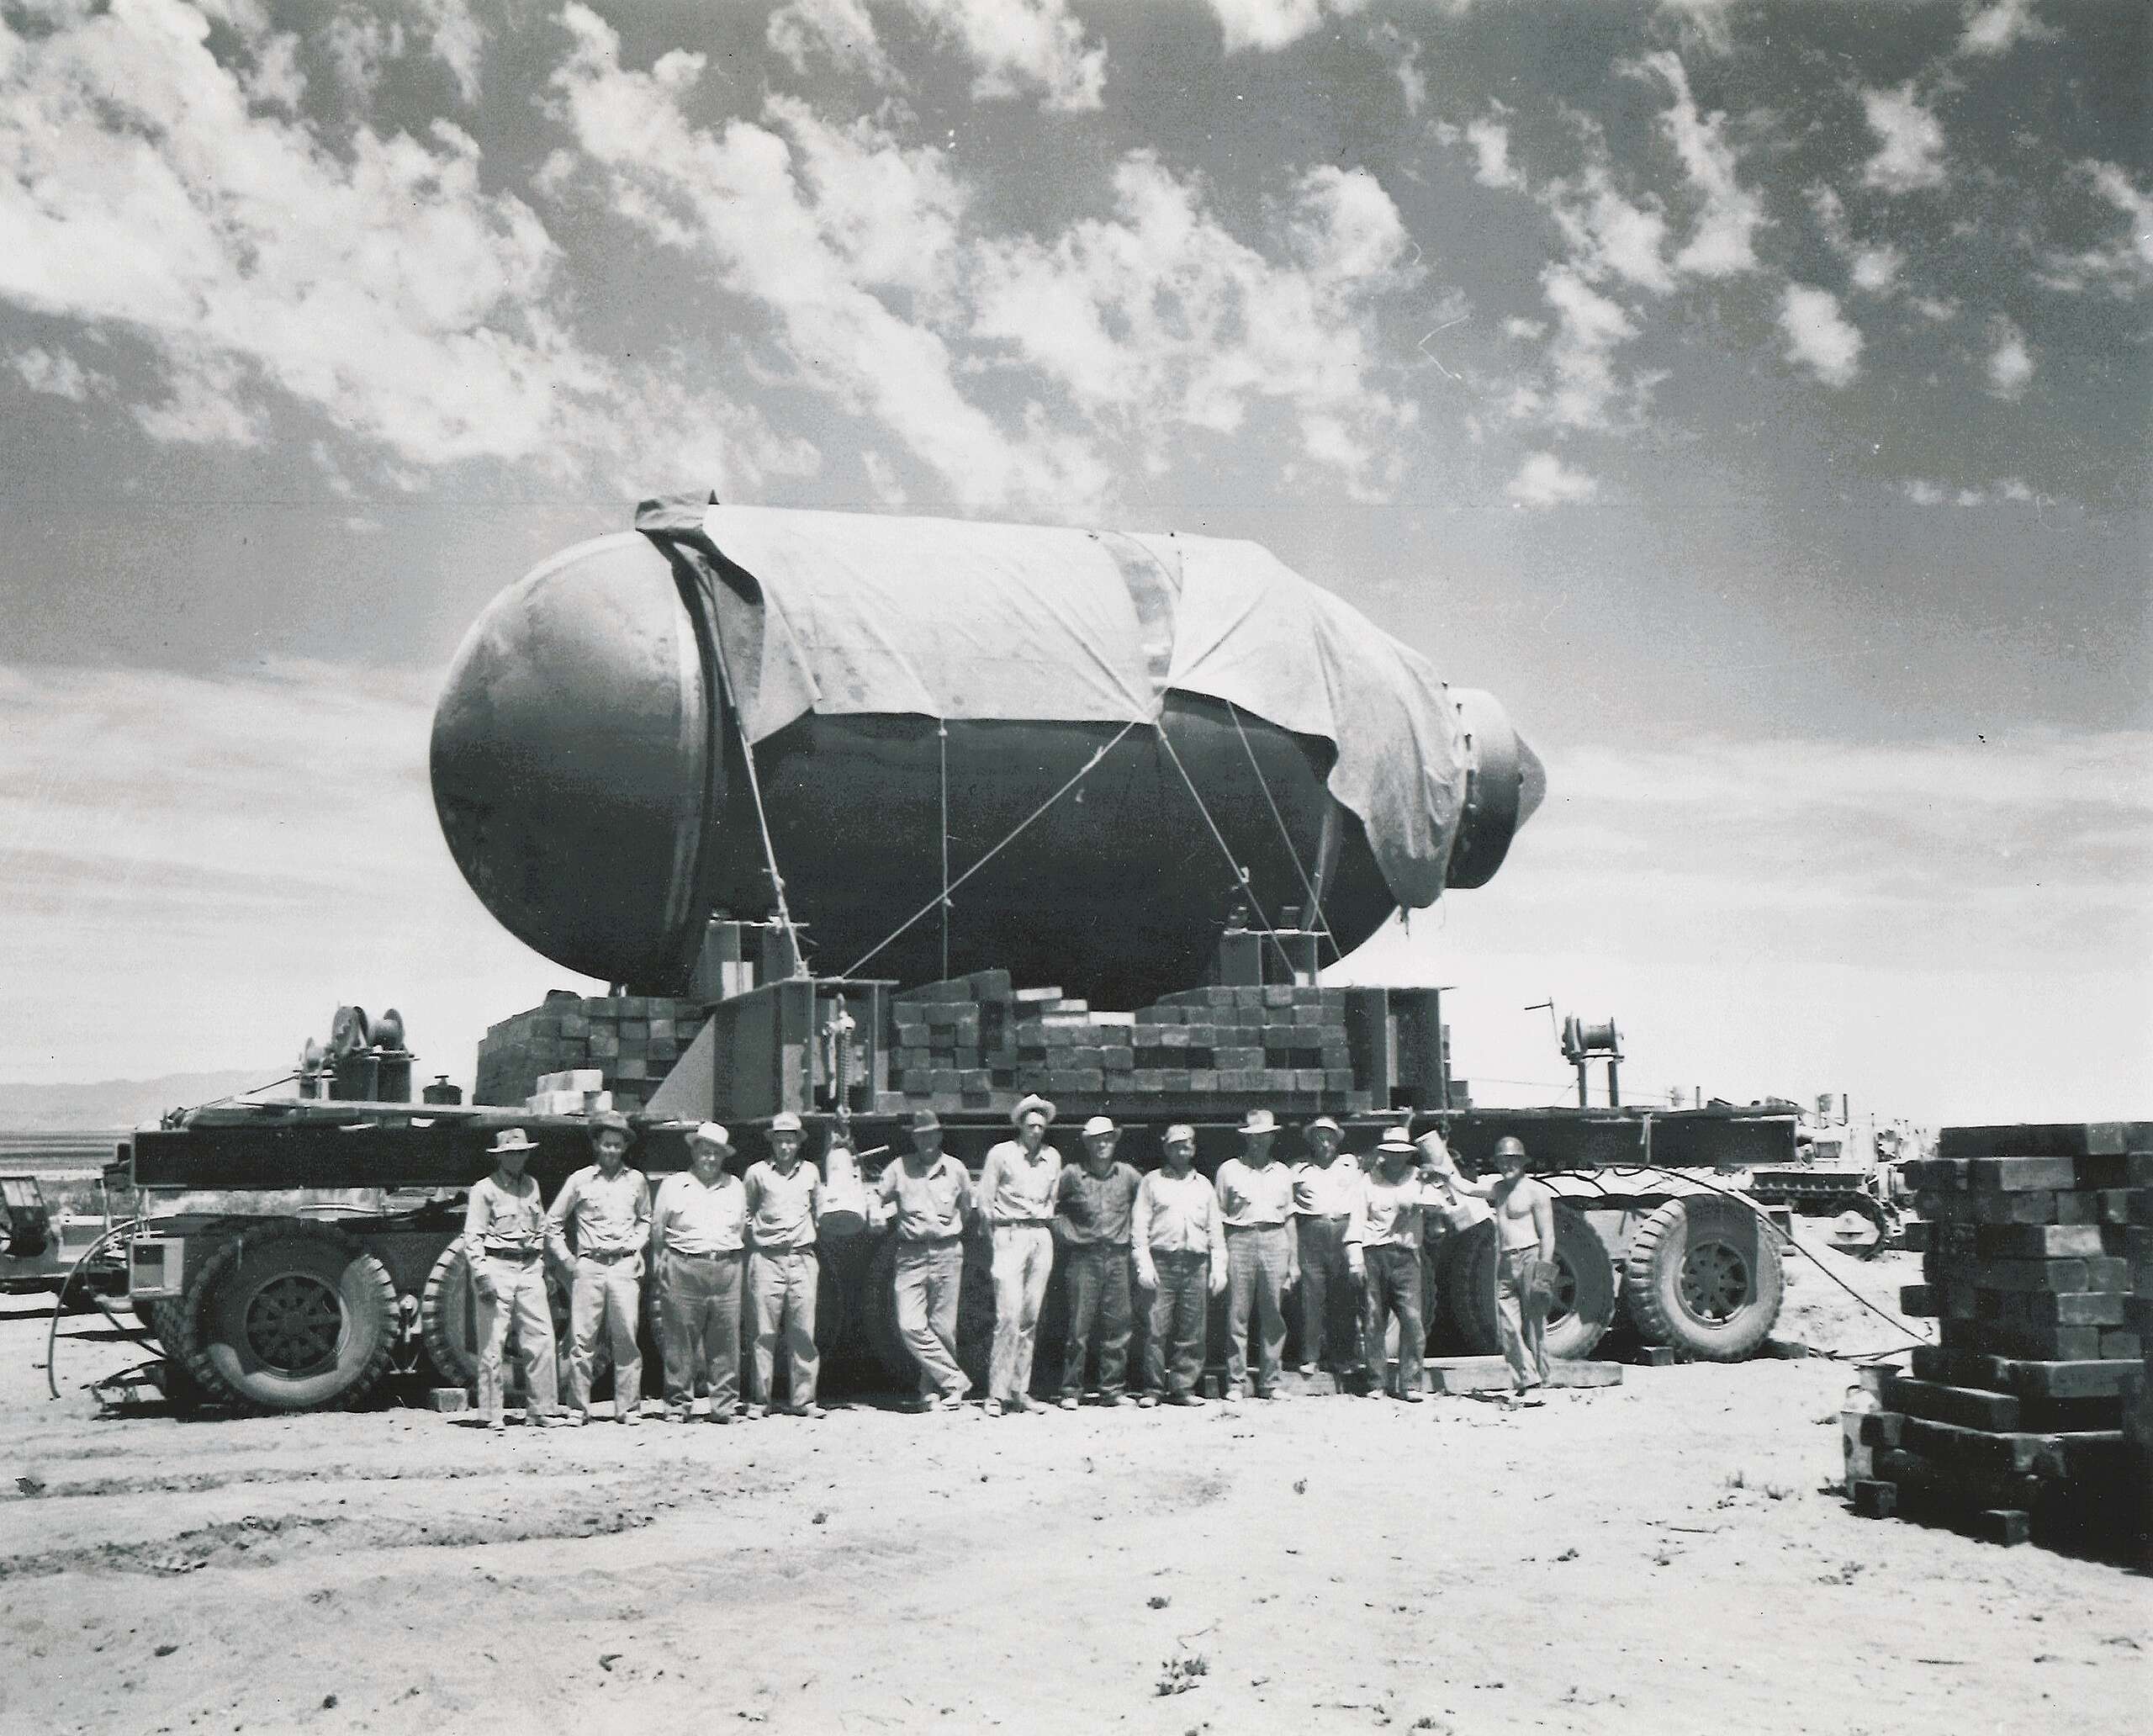 1945年7月16日美國新墨西哥州索科羅郡（Socorro County），原子彈首次進行試爆，也就是歷史上知名的「三位一體」（Trinity）試驗。